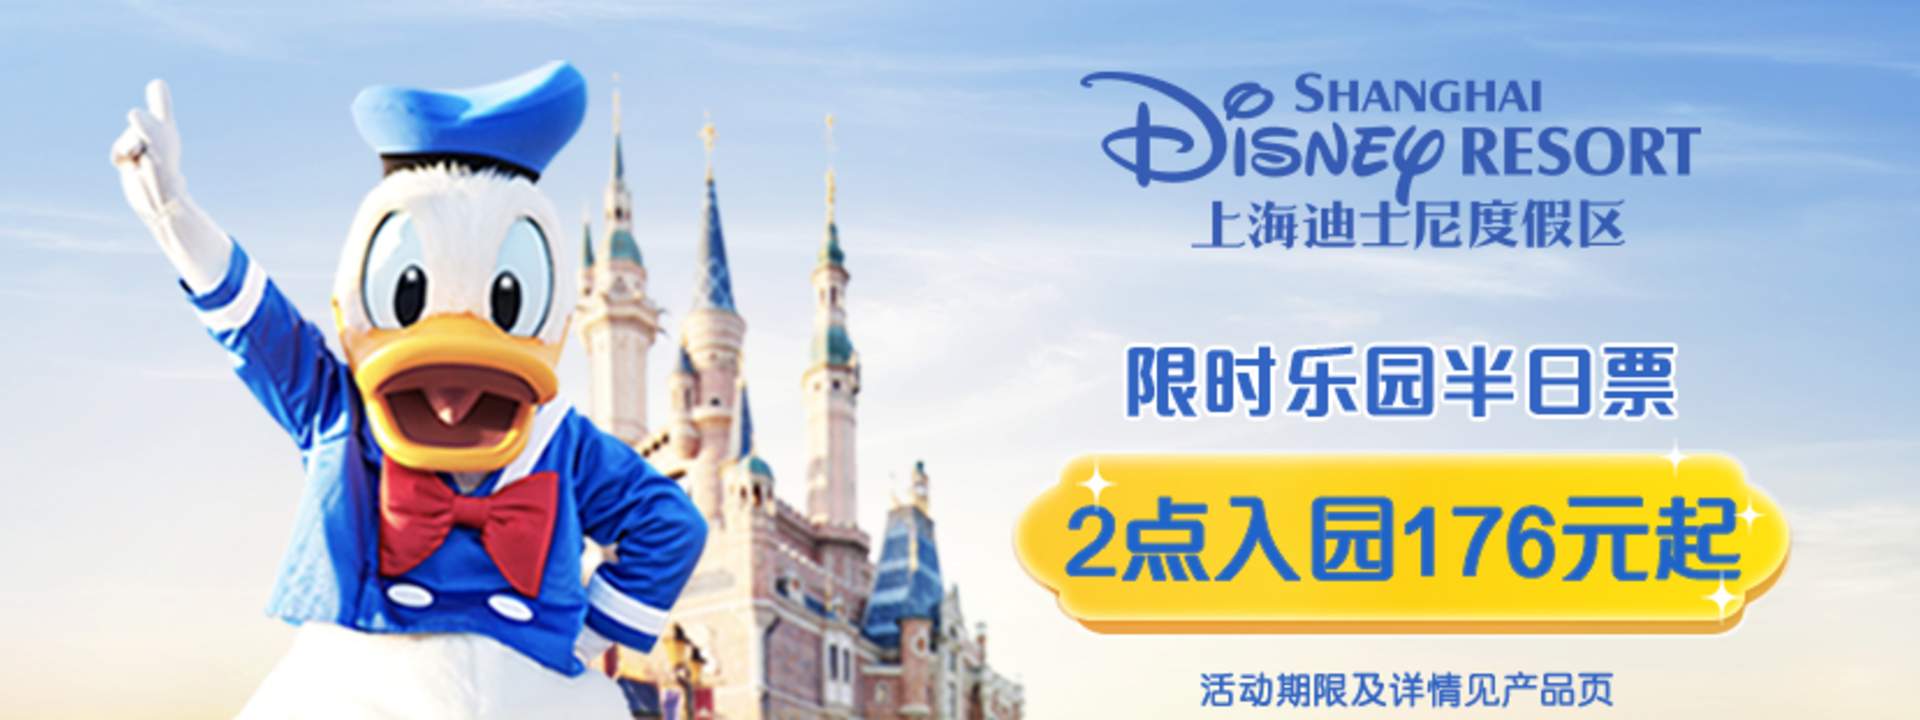 Buy Shanghai Disneyland Admission Tickets Online